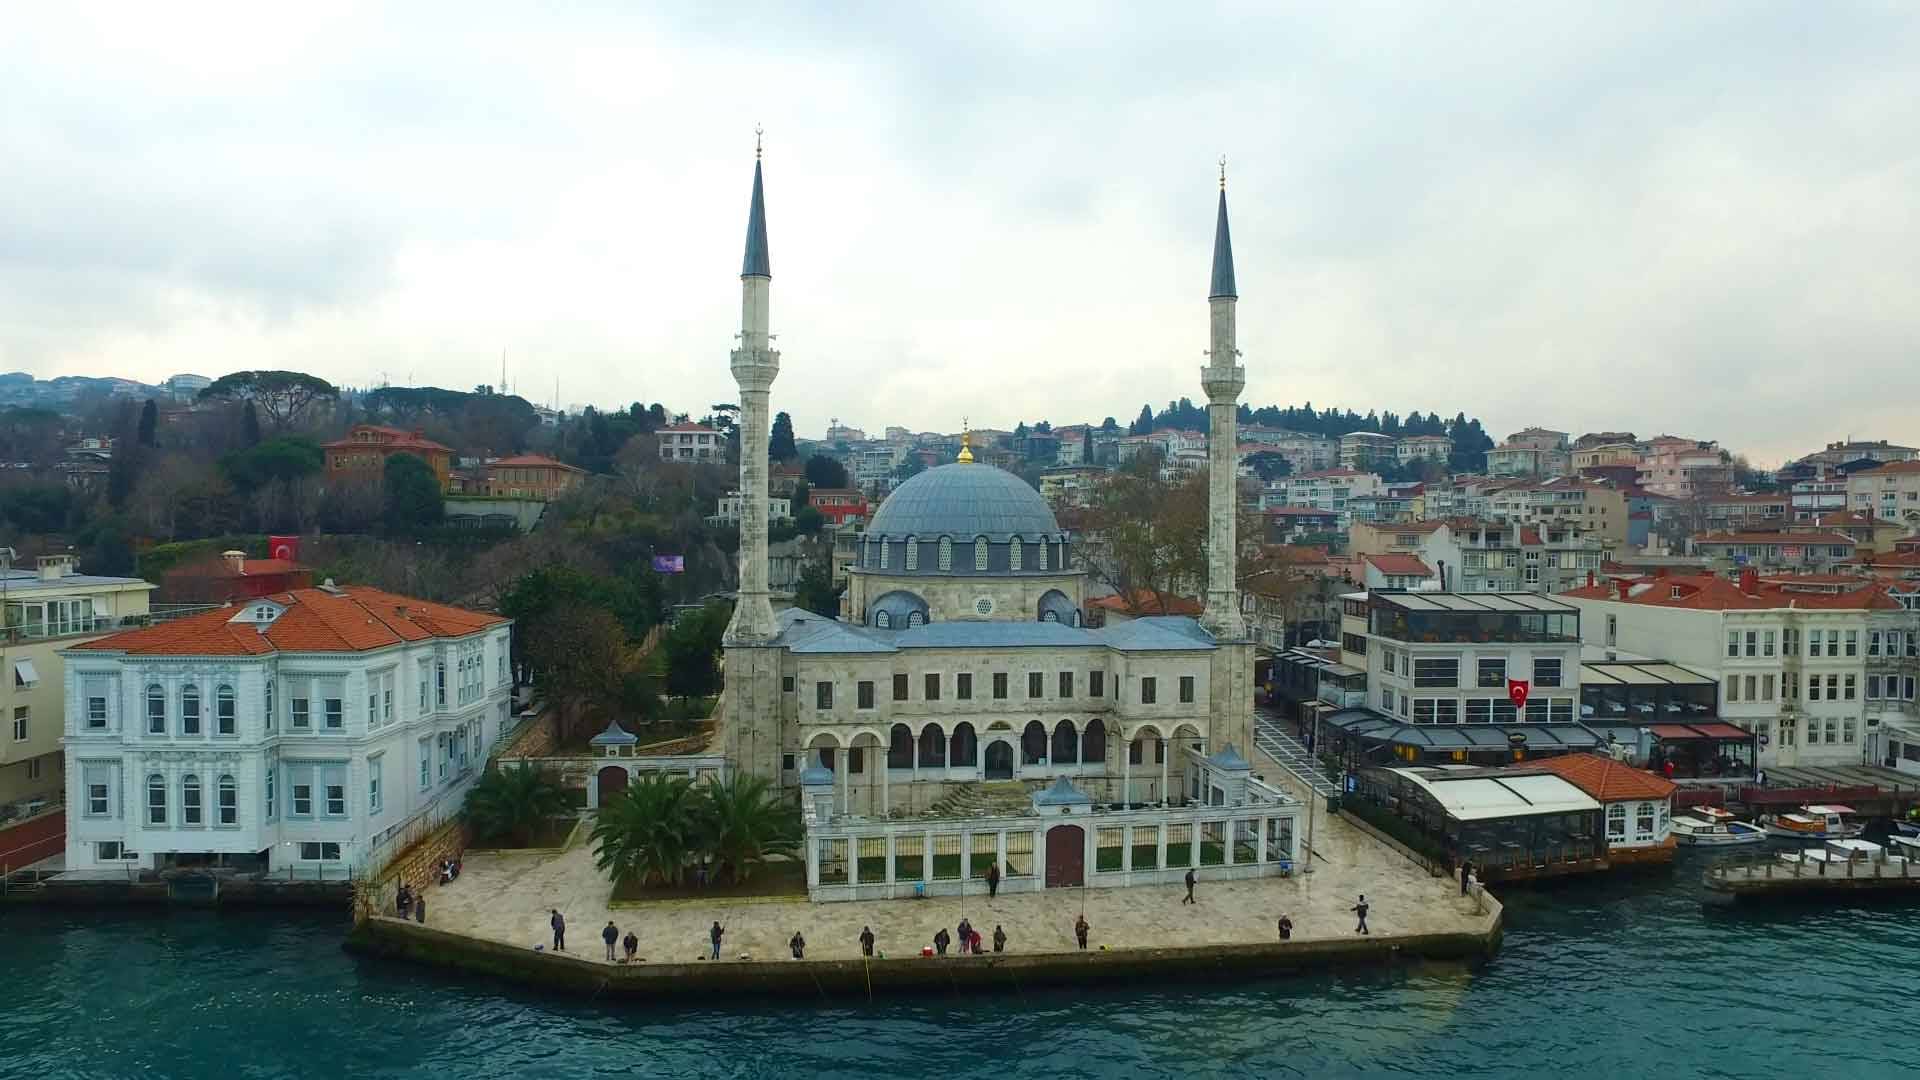 Beylerbeyi Camii